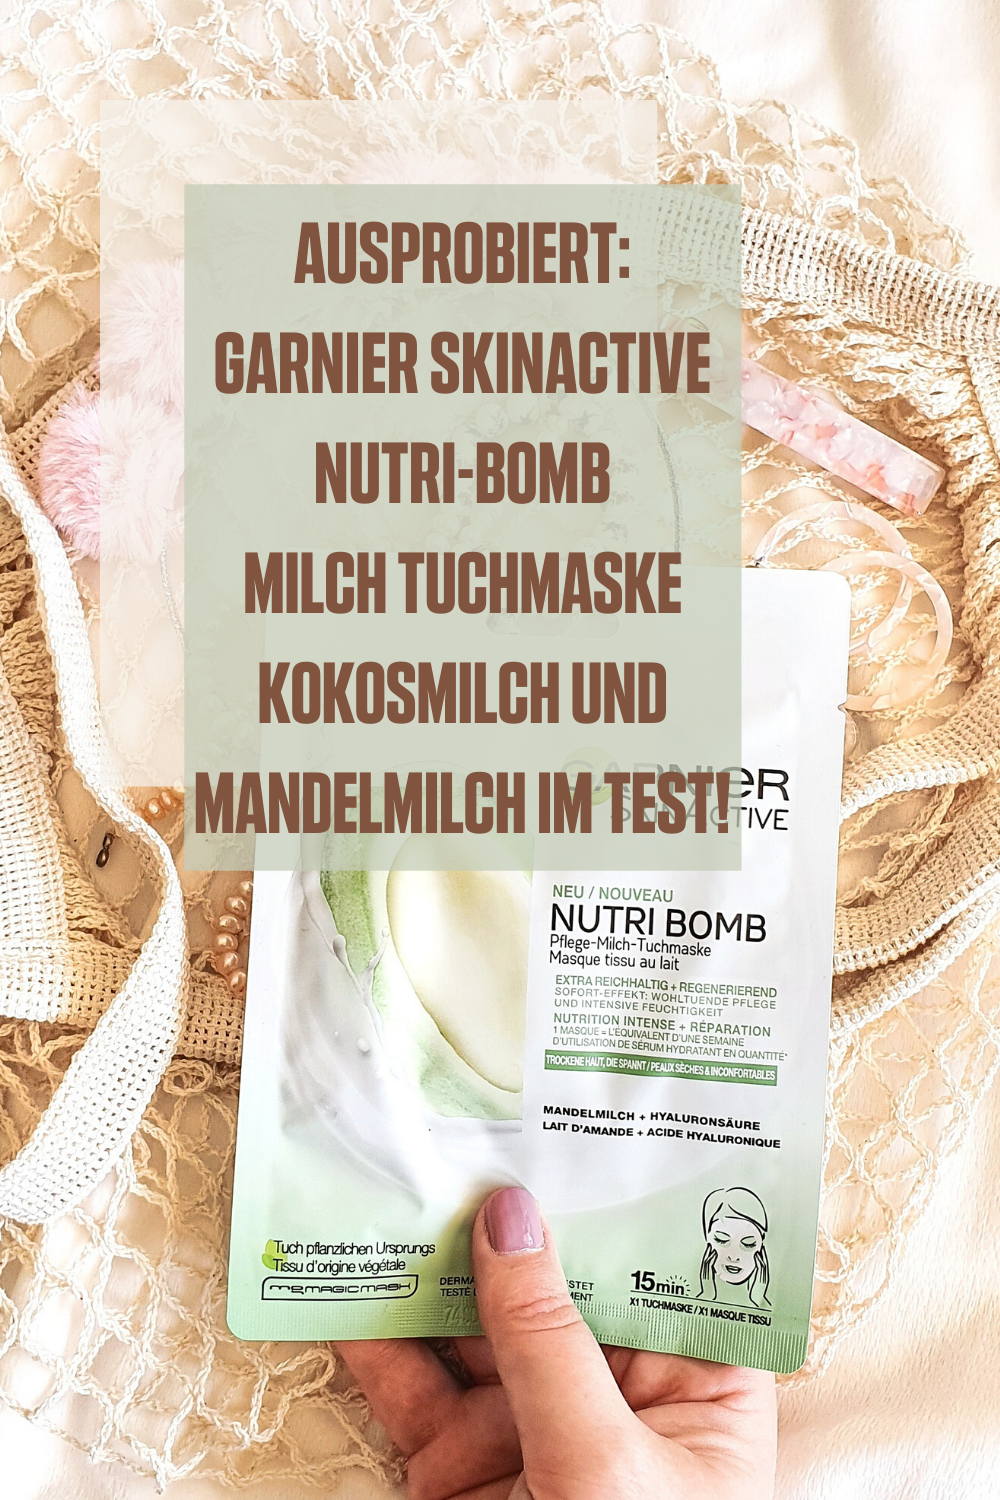 Ausprobiert: Garnier SkinActive Nutri-Bomb Milch Tuchmaske Kokosmilch und Mandelmilch im Test!